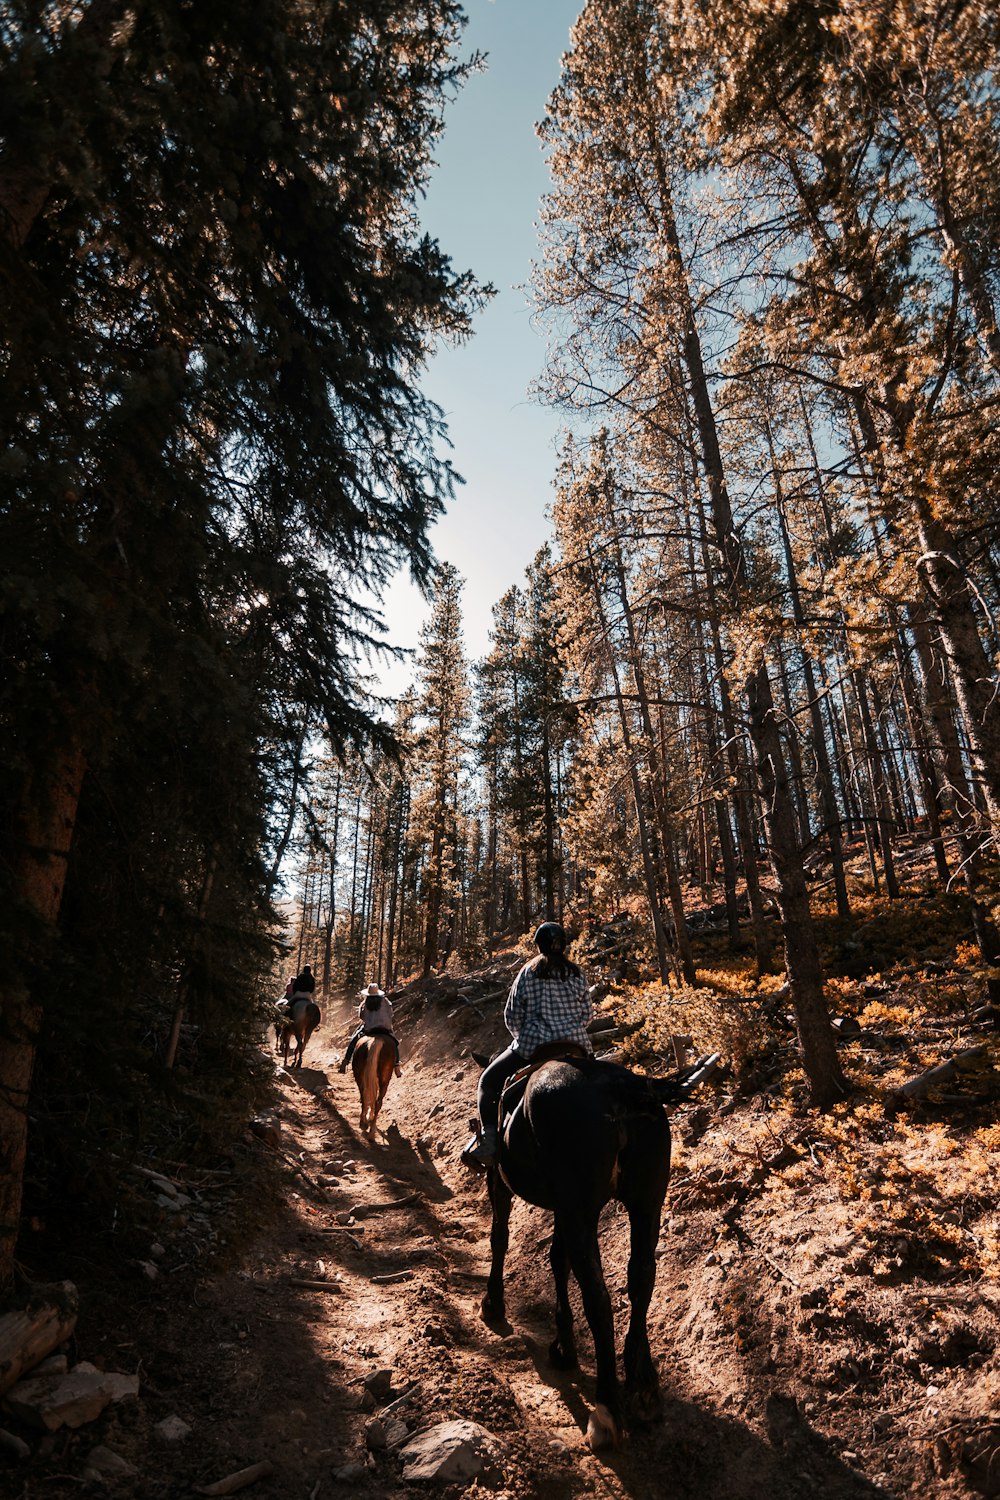 Ein paar Leute reiten auf dem Rücken von Pferden